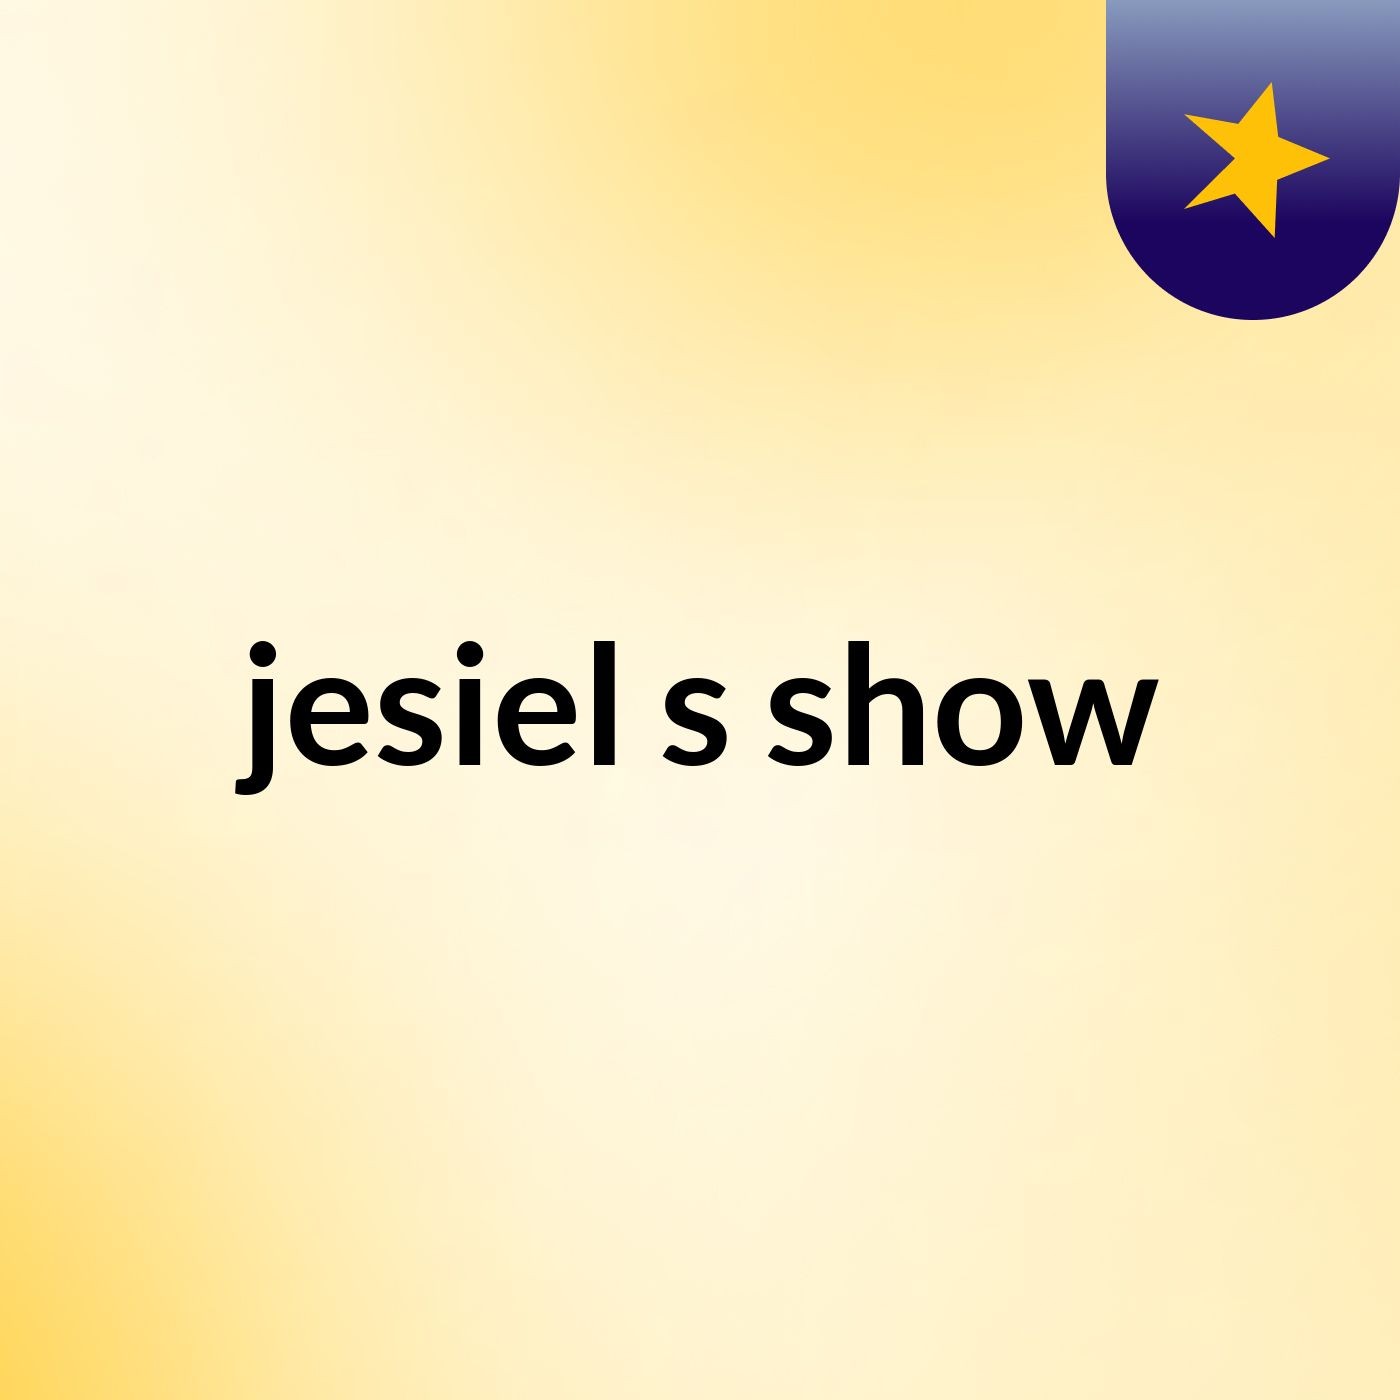 jesiel's show